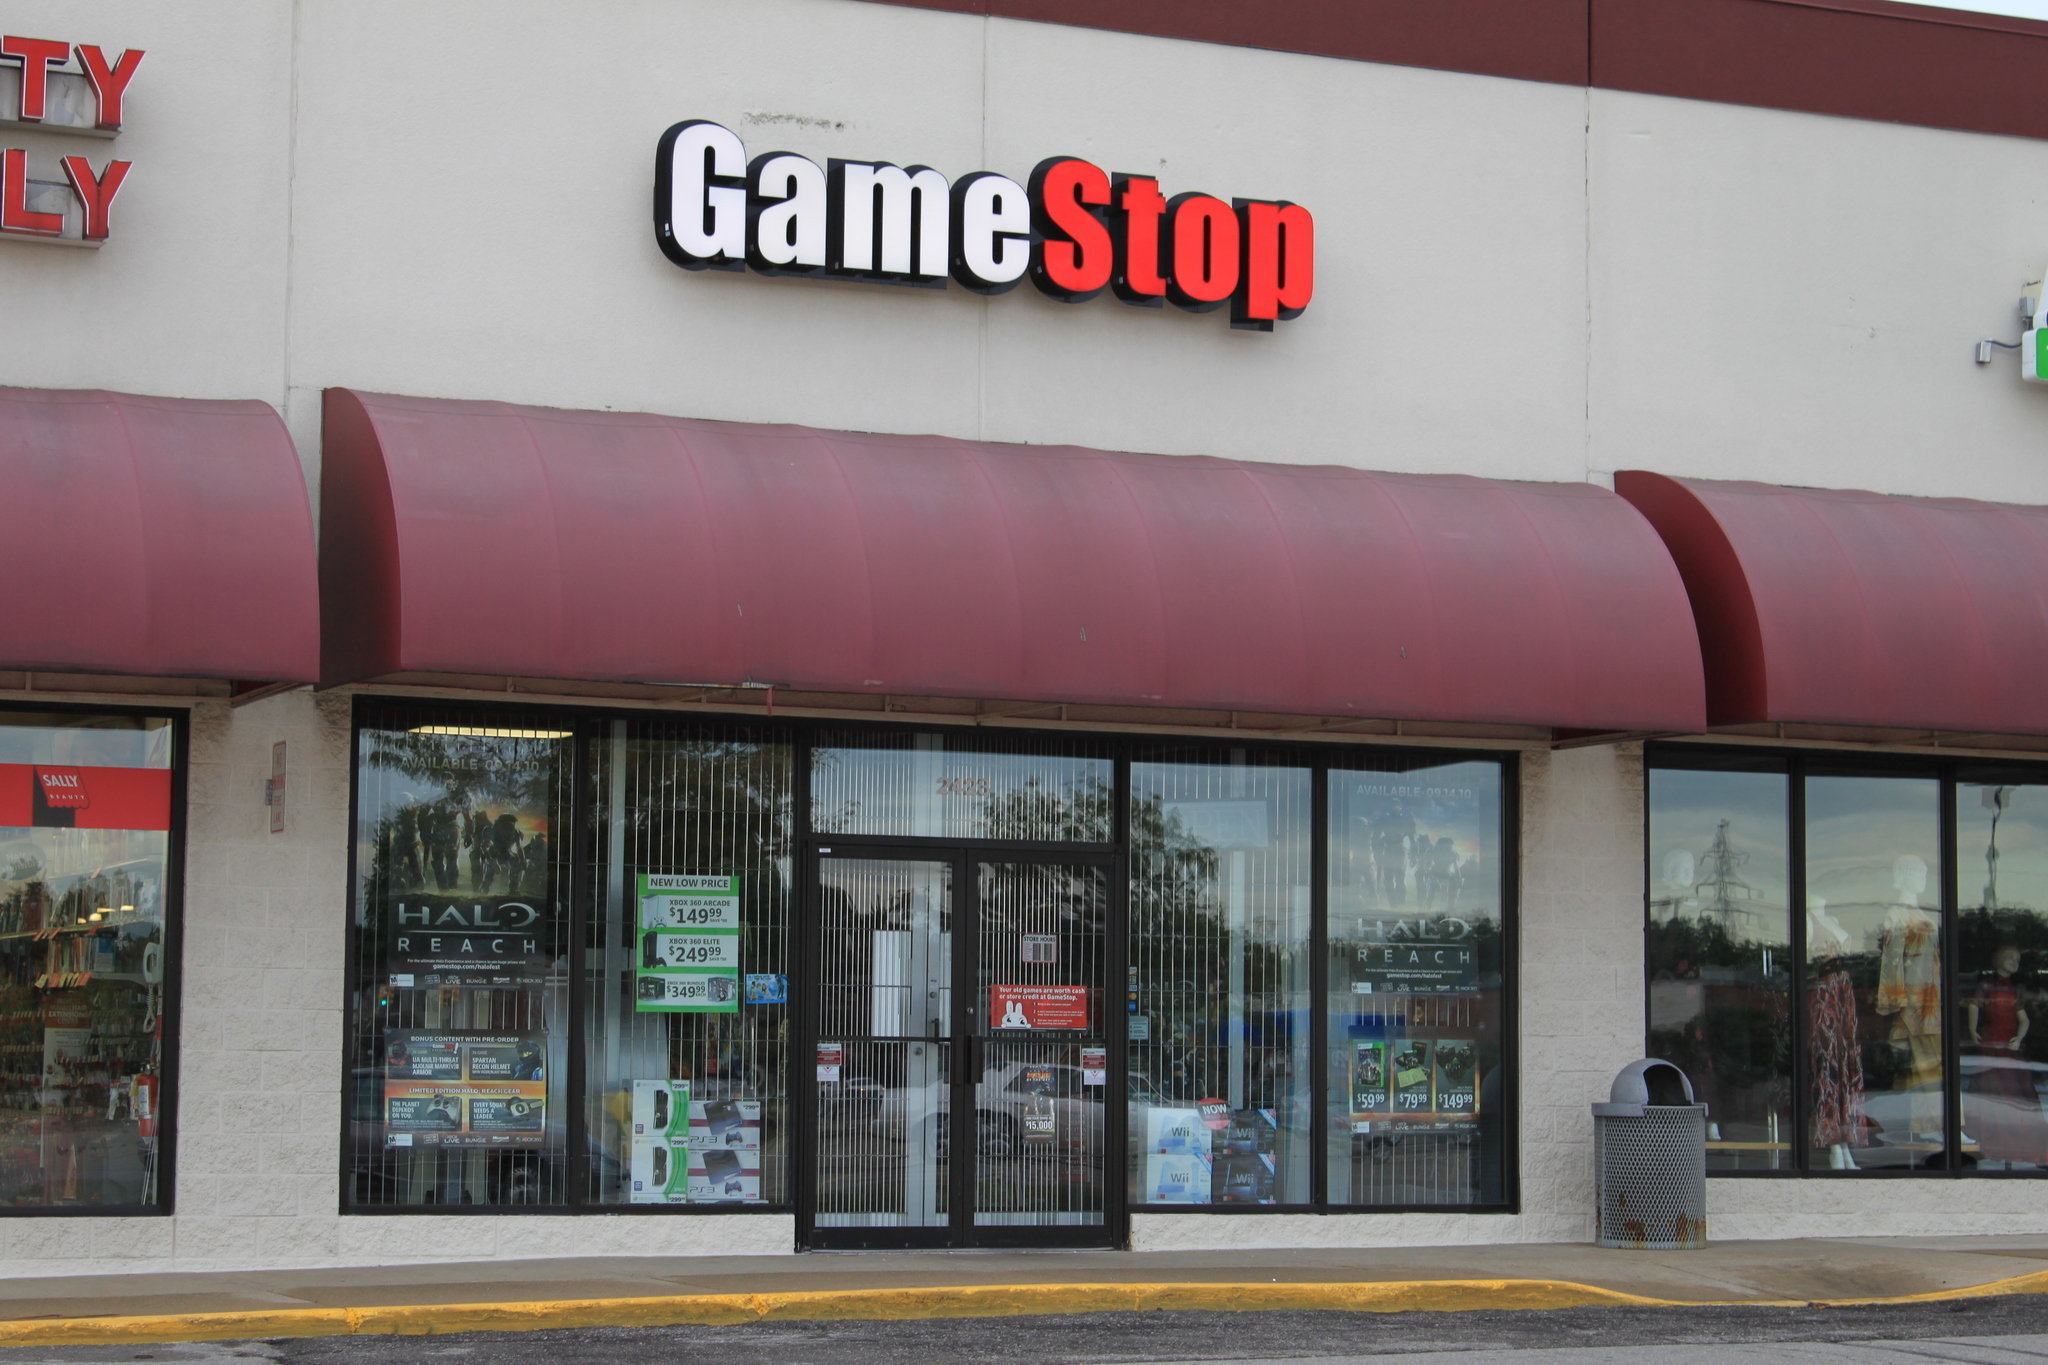 gamestop-store-ypsilantijpg-ee58616545a0f2a6.jpg